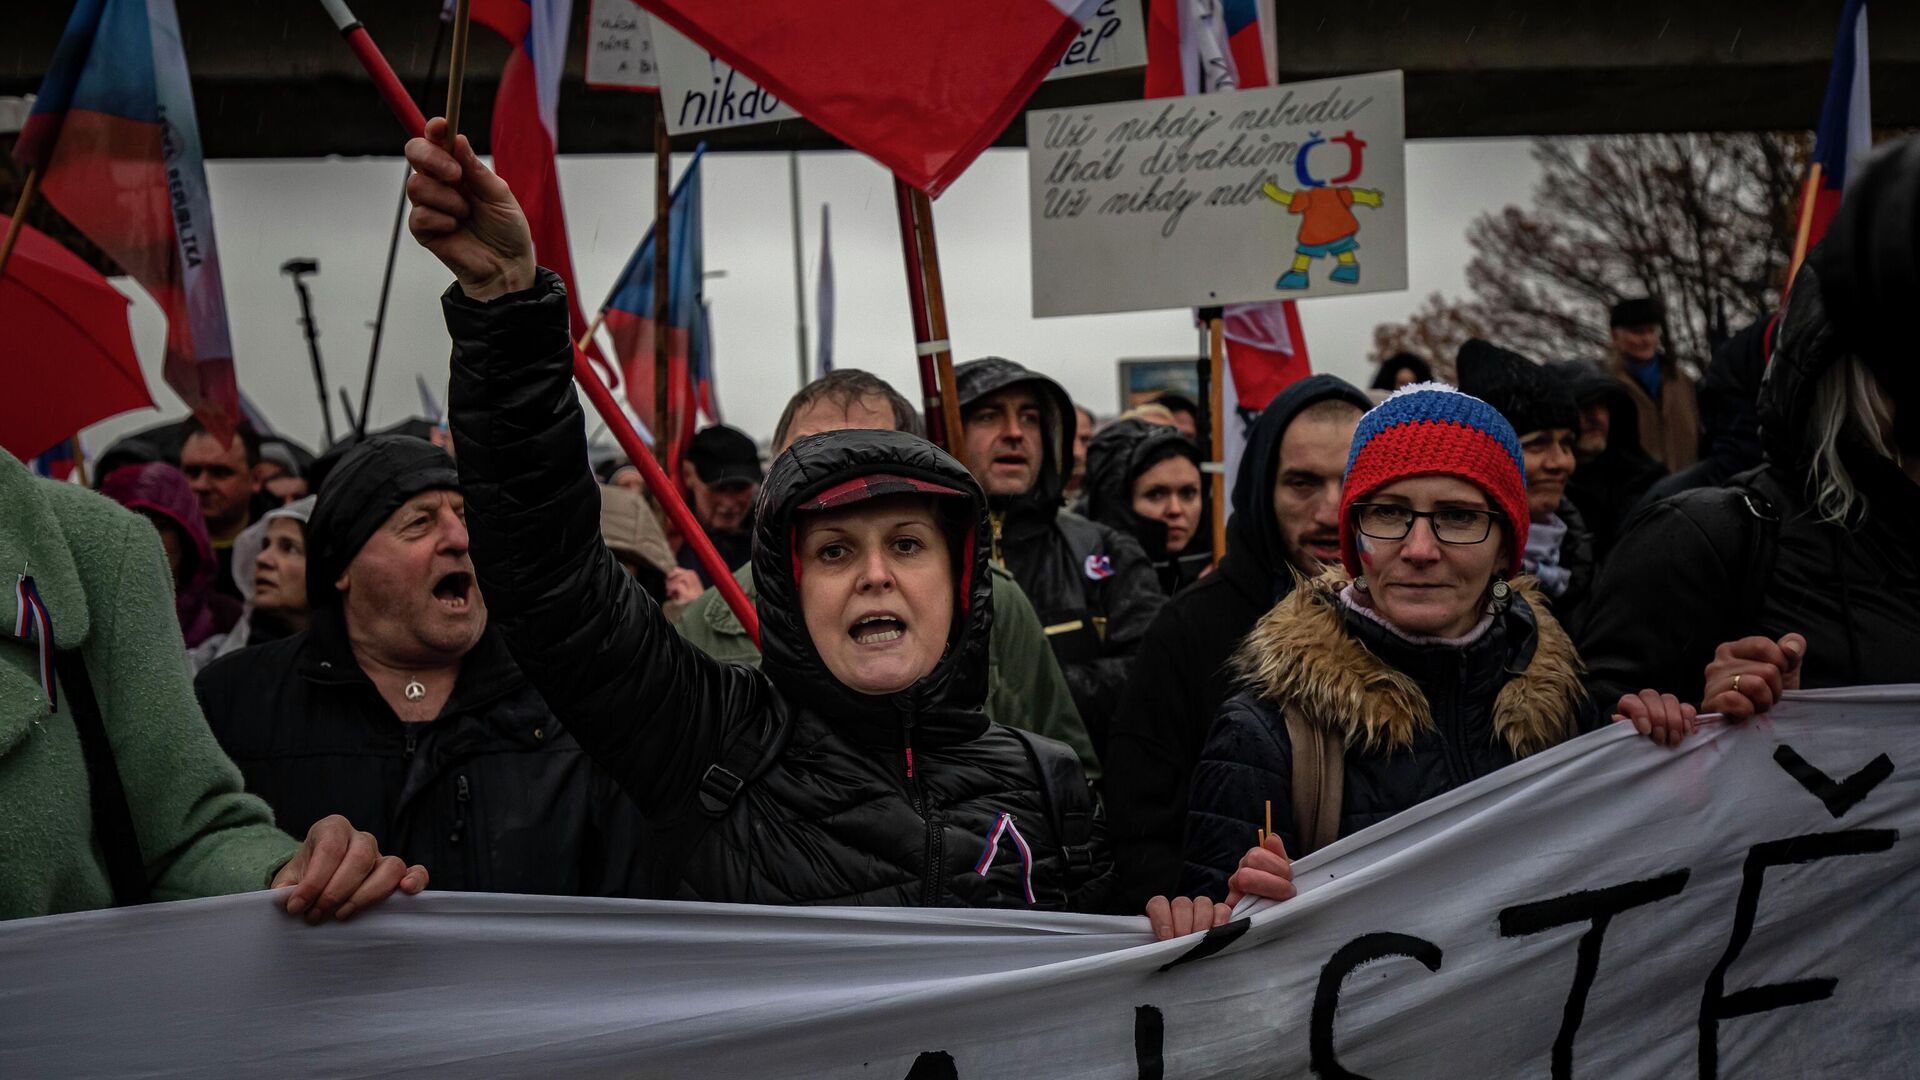 Антиправительственный протест в Праге, Чехия. 17 ноября 2022 года - ИноСМИ, 1920, 22.11.2022